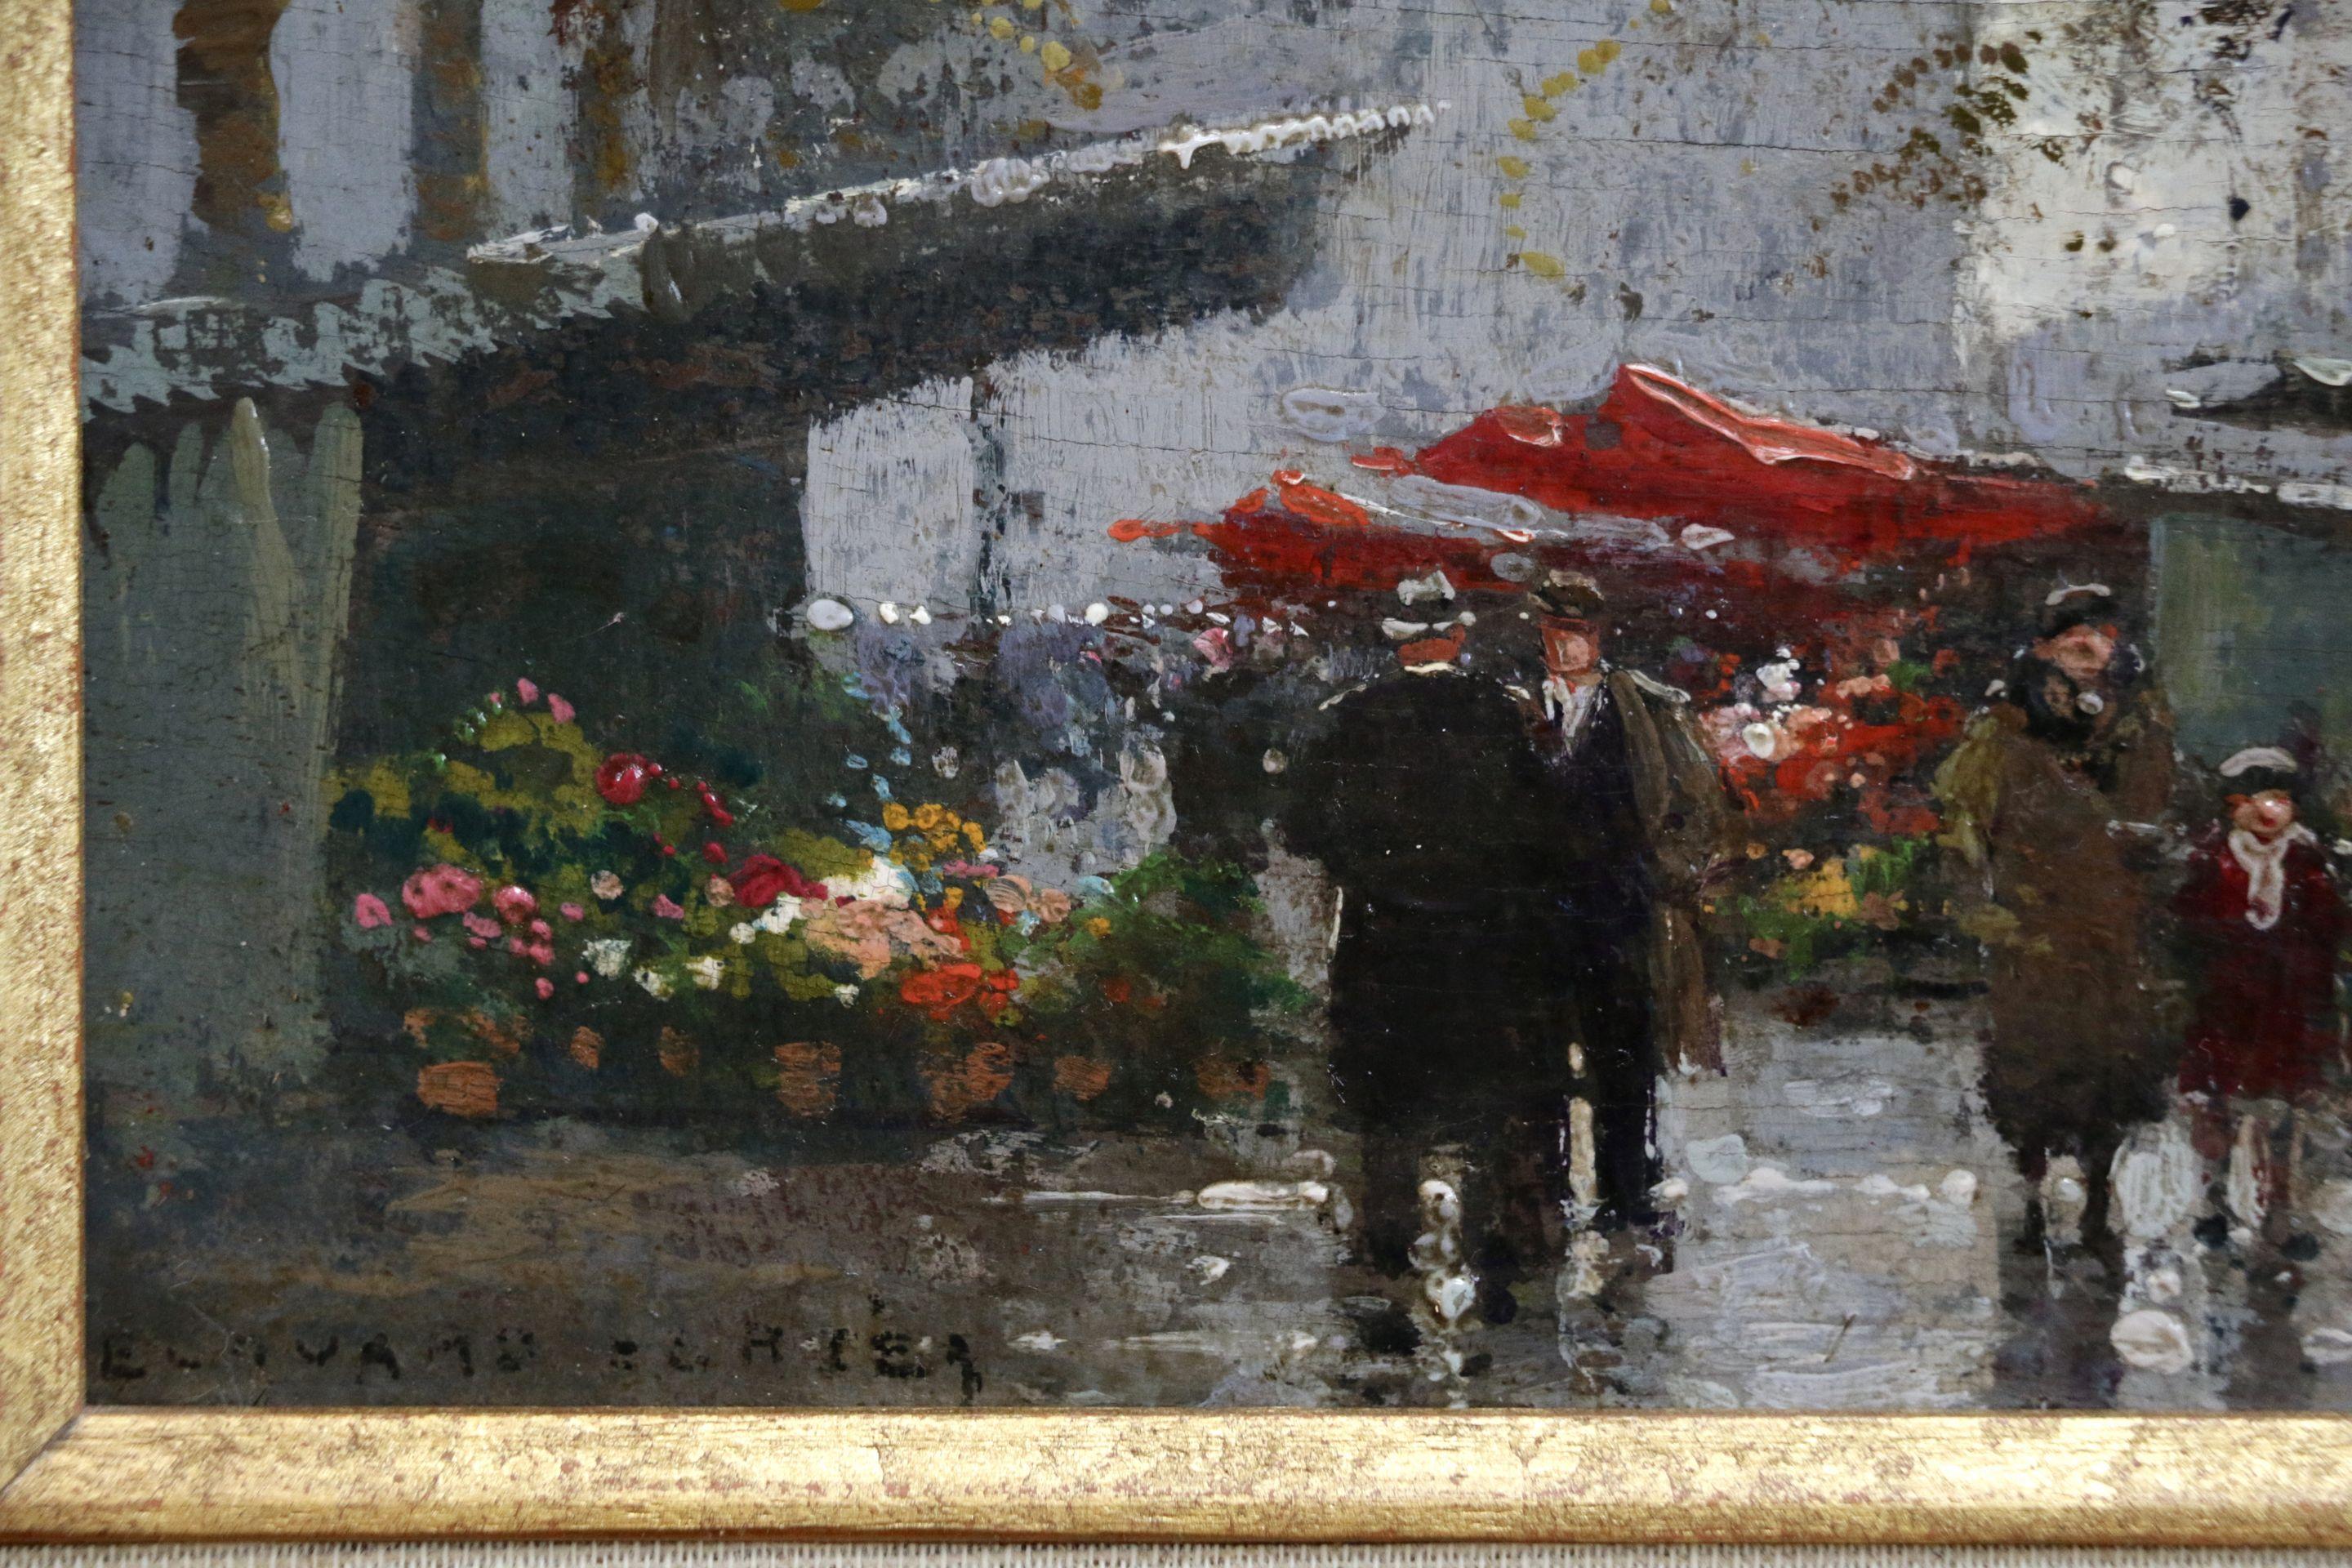 Place de la Madeleine - Marche aux fleurs Paris - Figures in Cityscape by Cortes - Impressionist Painting by Édouard Leon Cortès